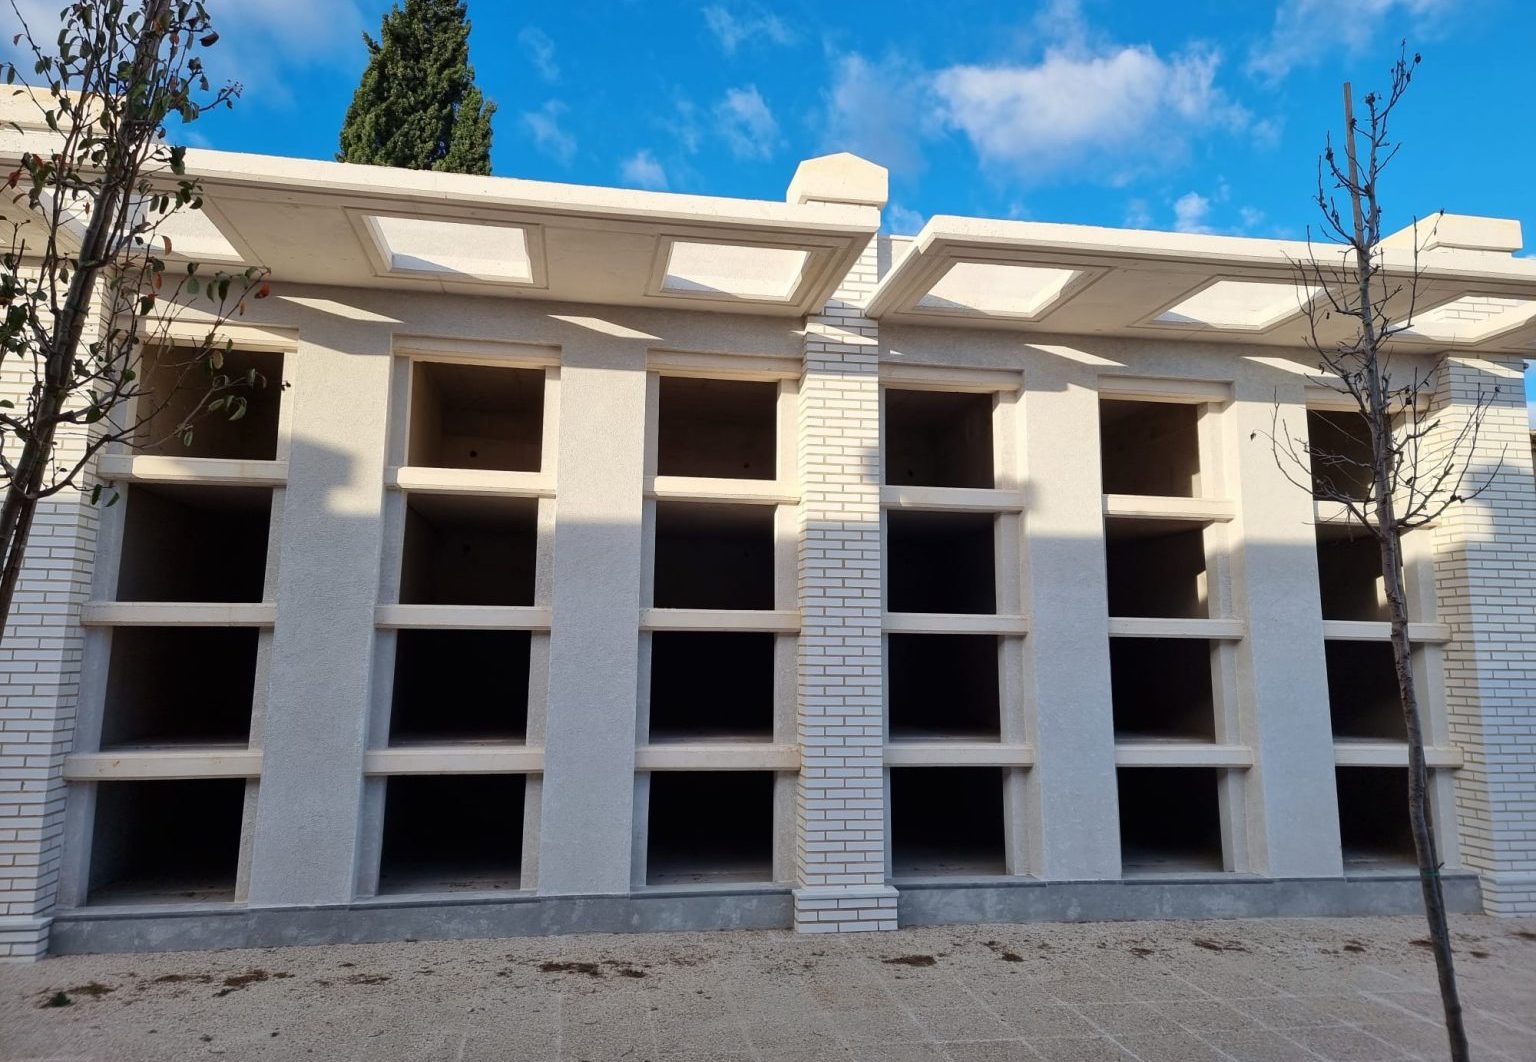 El cementerio municipal de Alzira dispone de 24 nichos dobles prefabricados